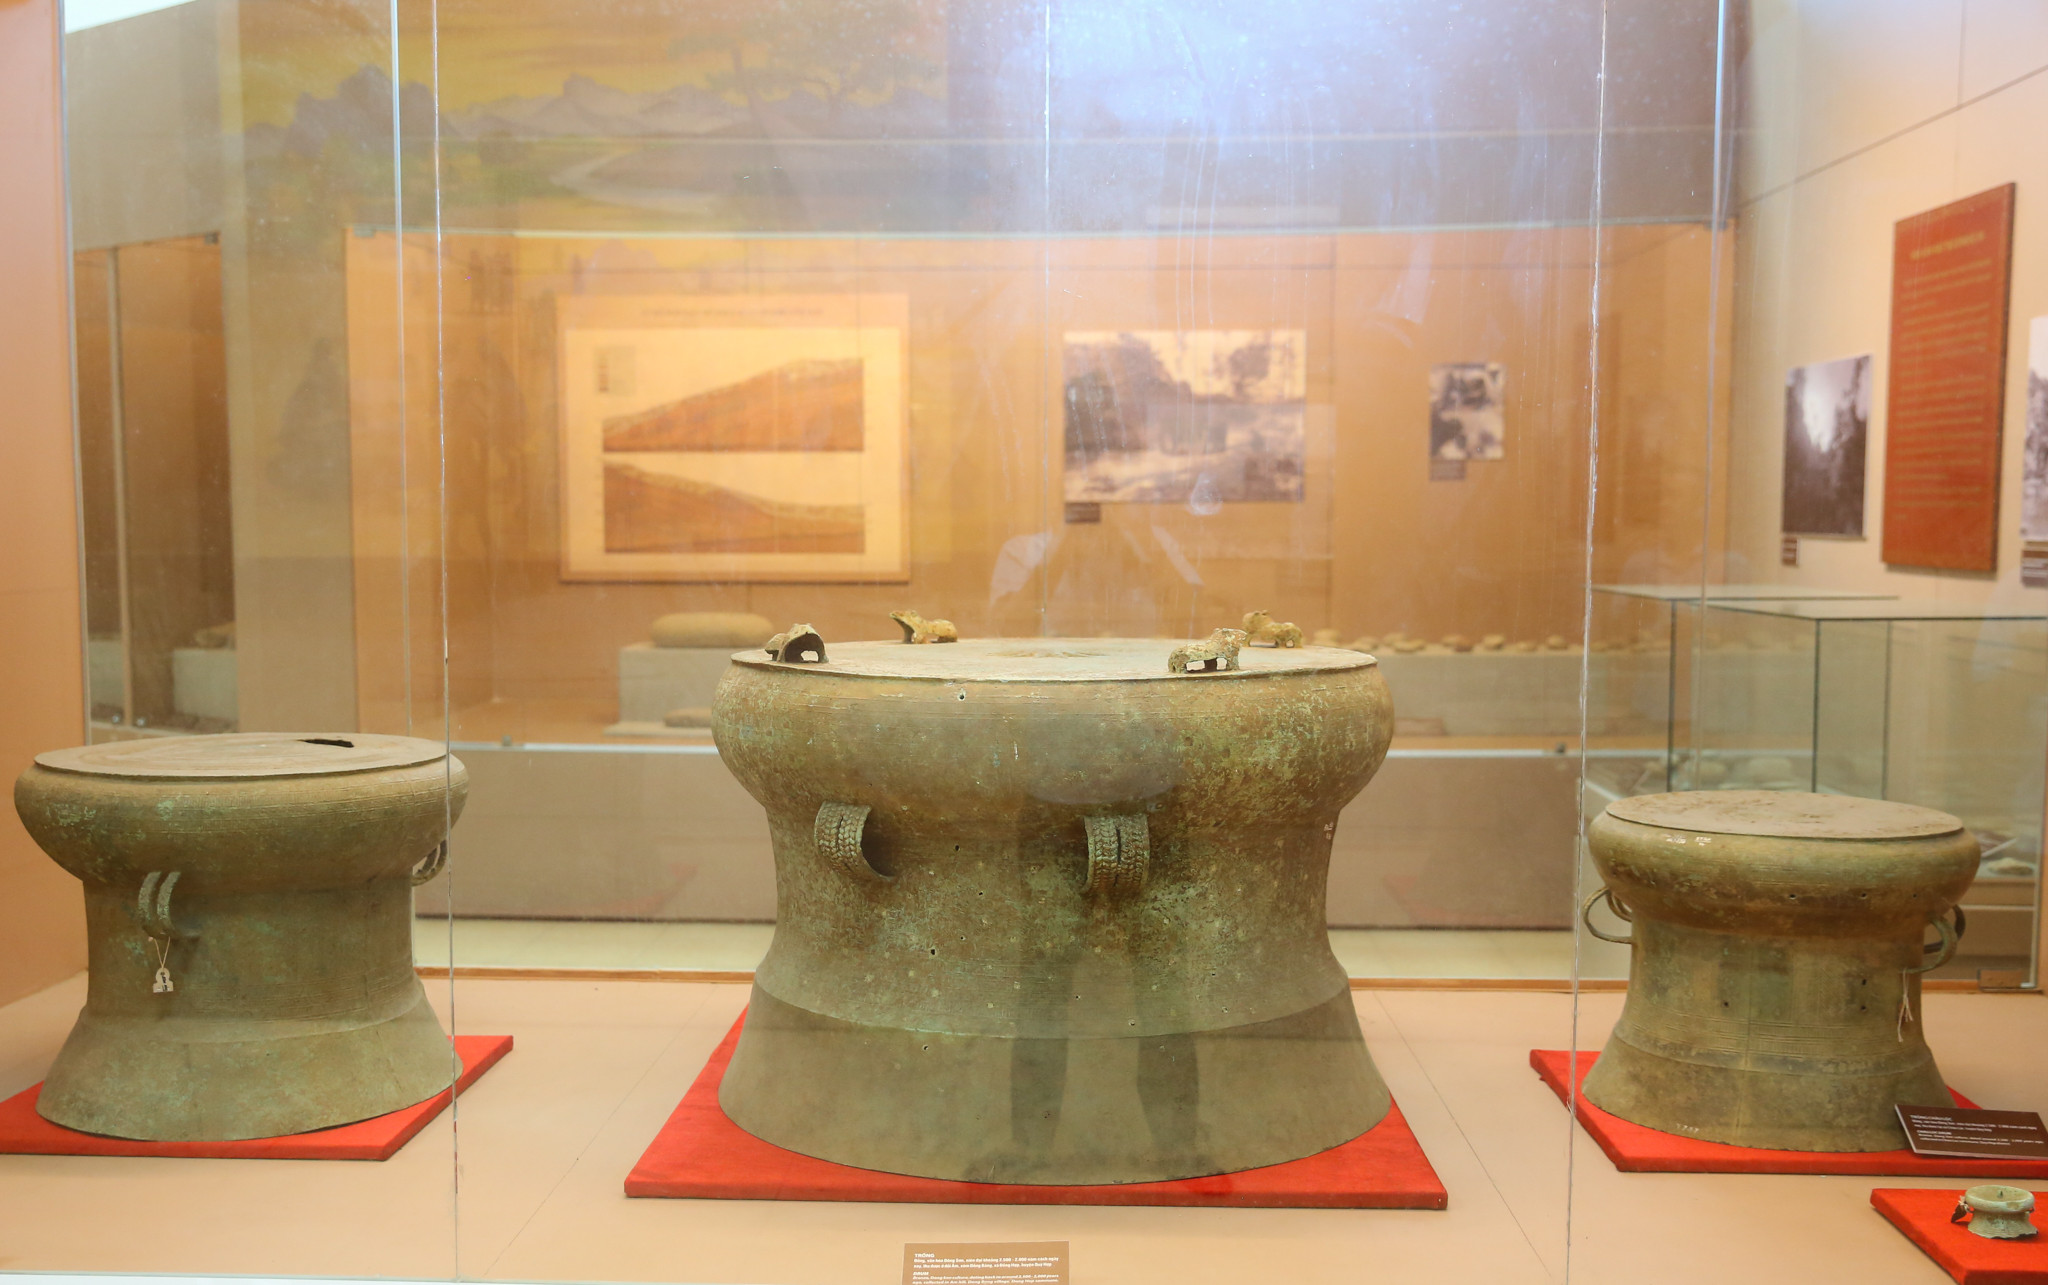 Những chiếc trống đồng này được tìm thấy ở địa bàn huyện Quỳ Hợp, được xác định thuộc văn hóa Đông Sơn, cách ngày nay khoảng 2.500 - 2.000 năm. Điều này khẳng định Nghệ An từng phát triển rực rỡ trong thời kỳ văn hóa Đông Sơn. Ảnh: Đức Anh